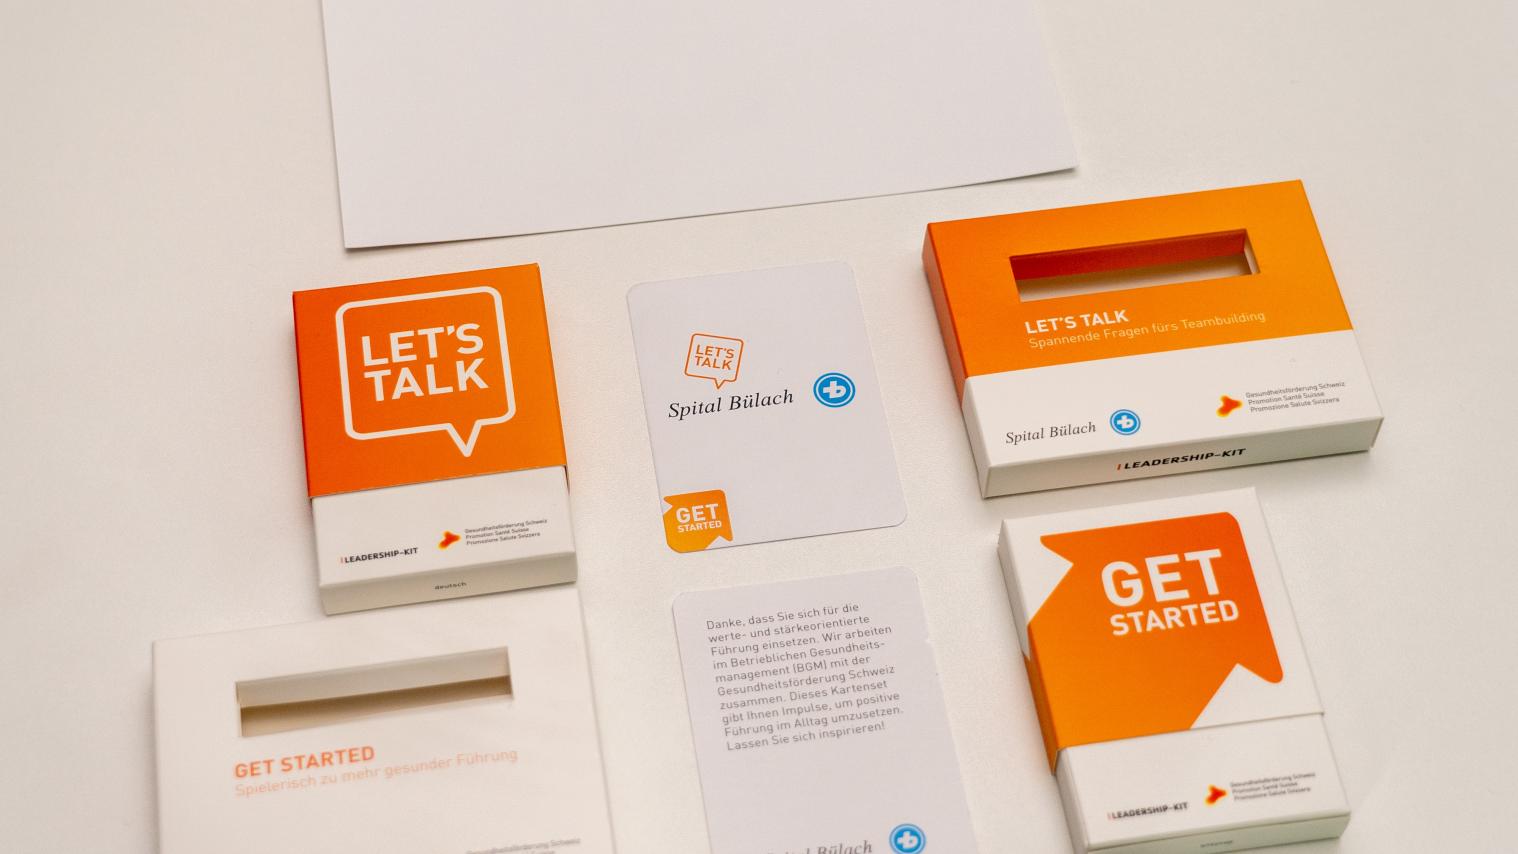 Co-Branding Kartenset "Let's talk" und "Get started" - Auslegeordnung mit Co-Branding-Karten und Welcome-Card